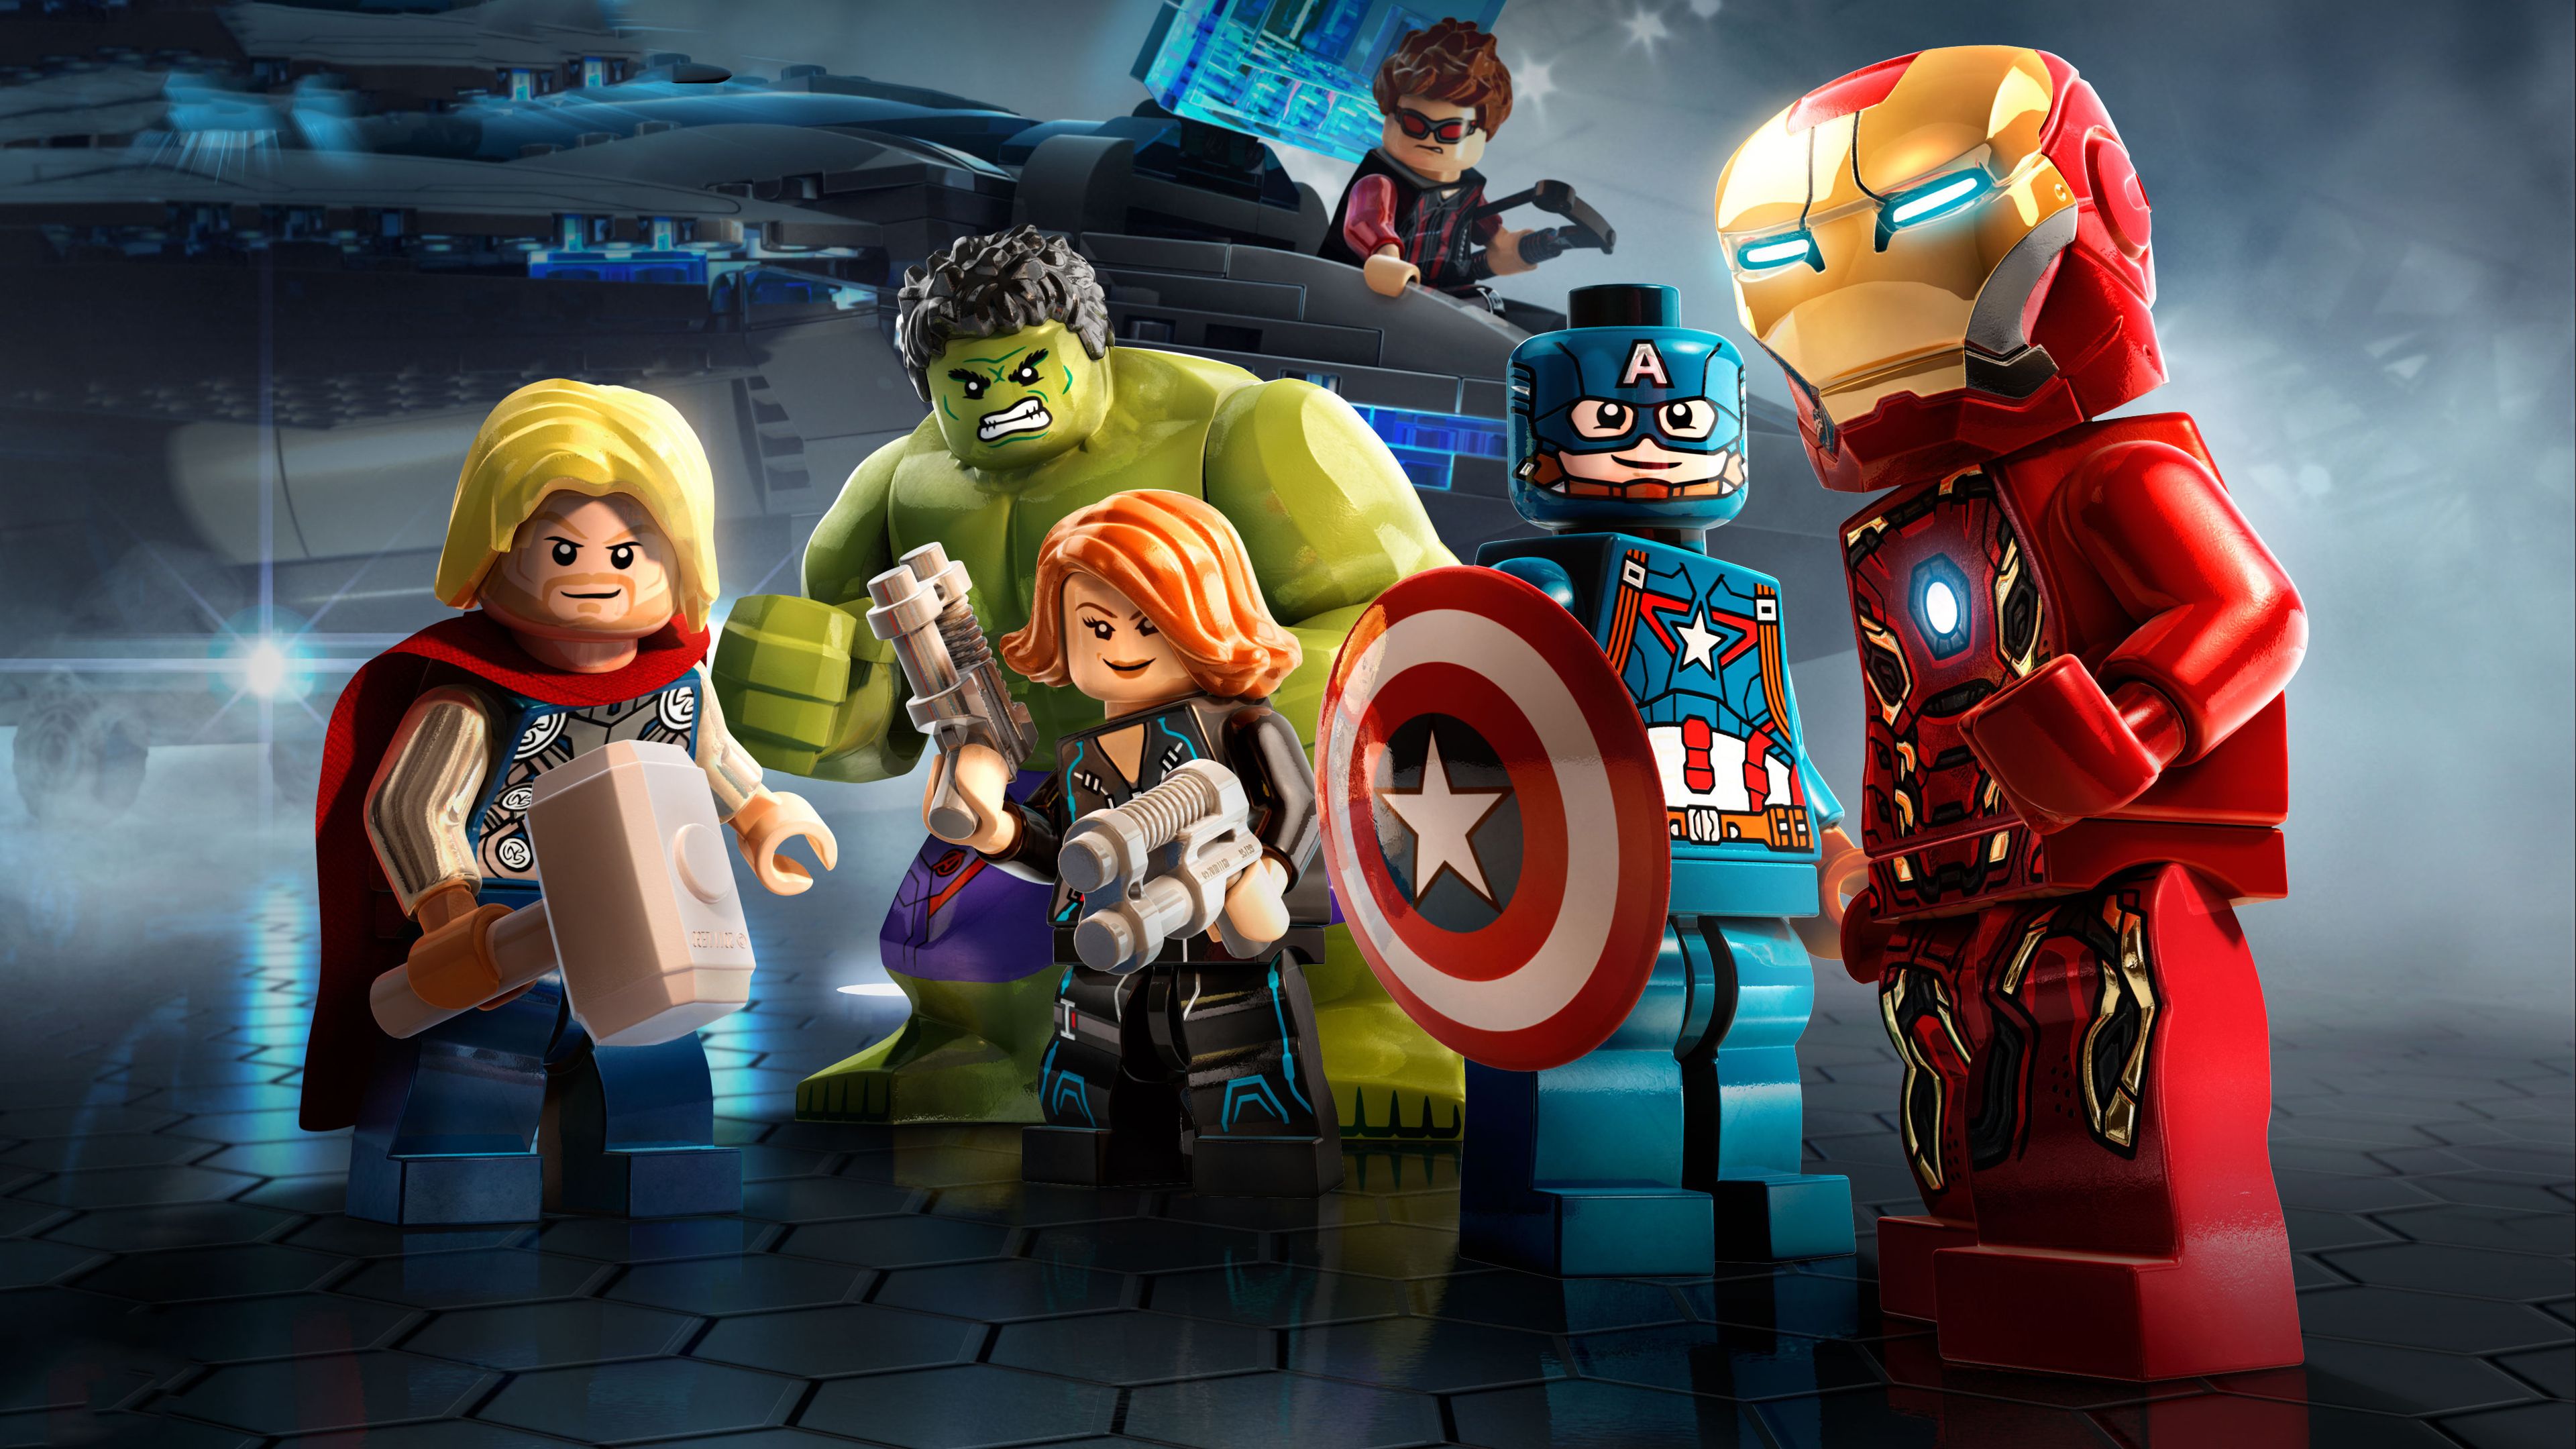 レゴのスーパーヒーローの壁紙,おもちゃ,スーパーヒーロー,ヒーロー,架空の人物,アクションフィギュア